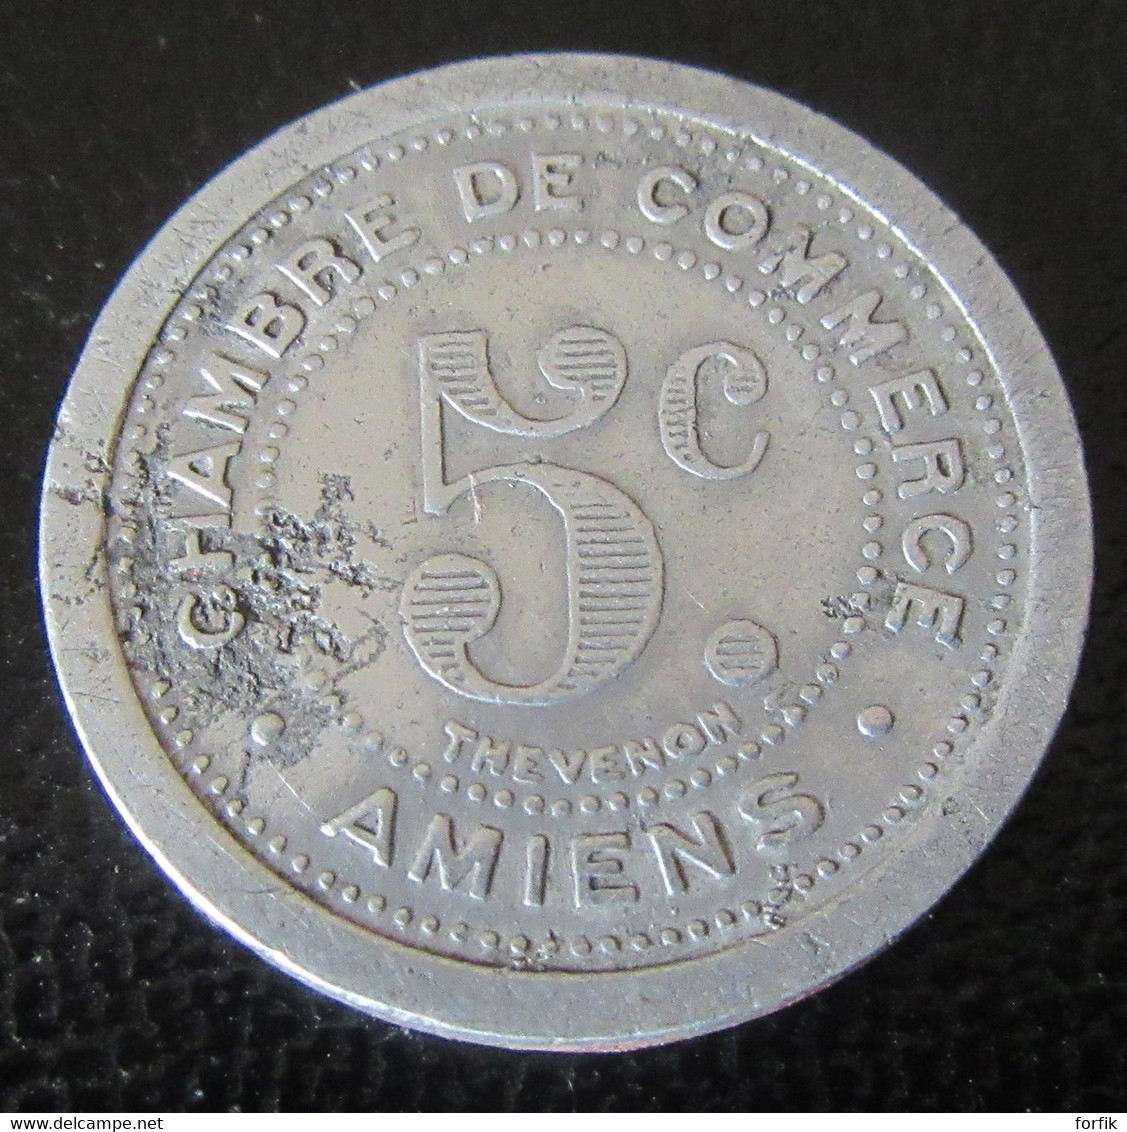 Achat Immédiat - France - Jeton Monétaire 5 Centimes Chambre De Commerce D'Amiens 1921 En Aluminium - Monetary / Of Necessity